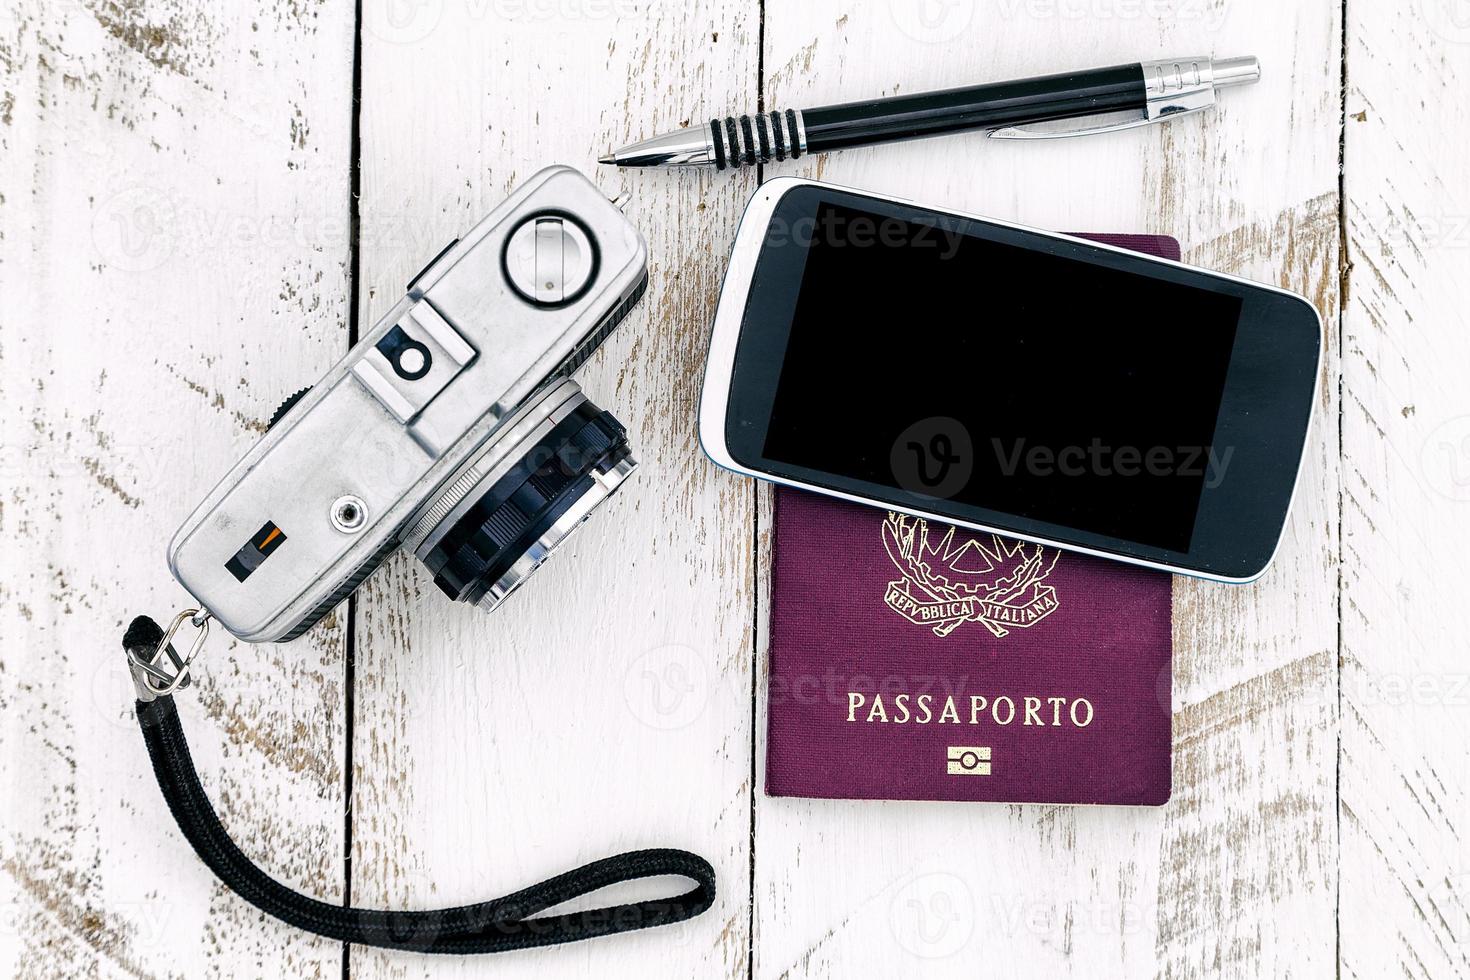 Reisepass-Vintage-Kamera und Smartphone foto